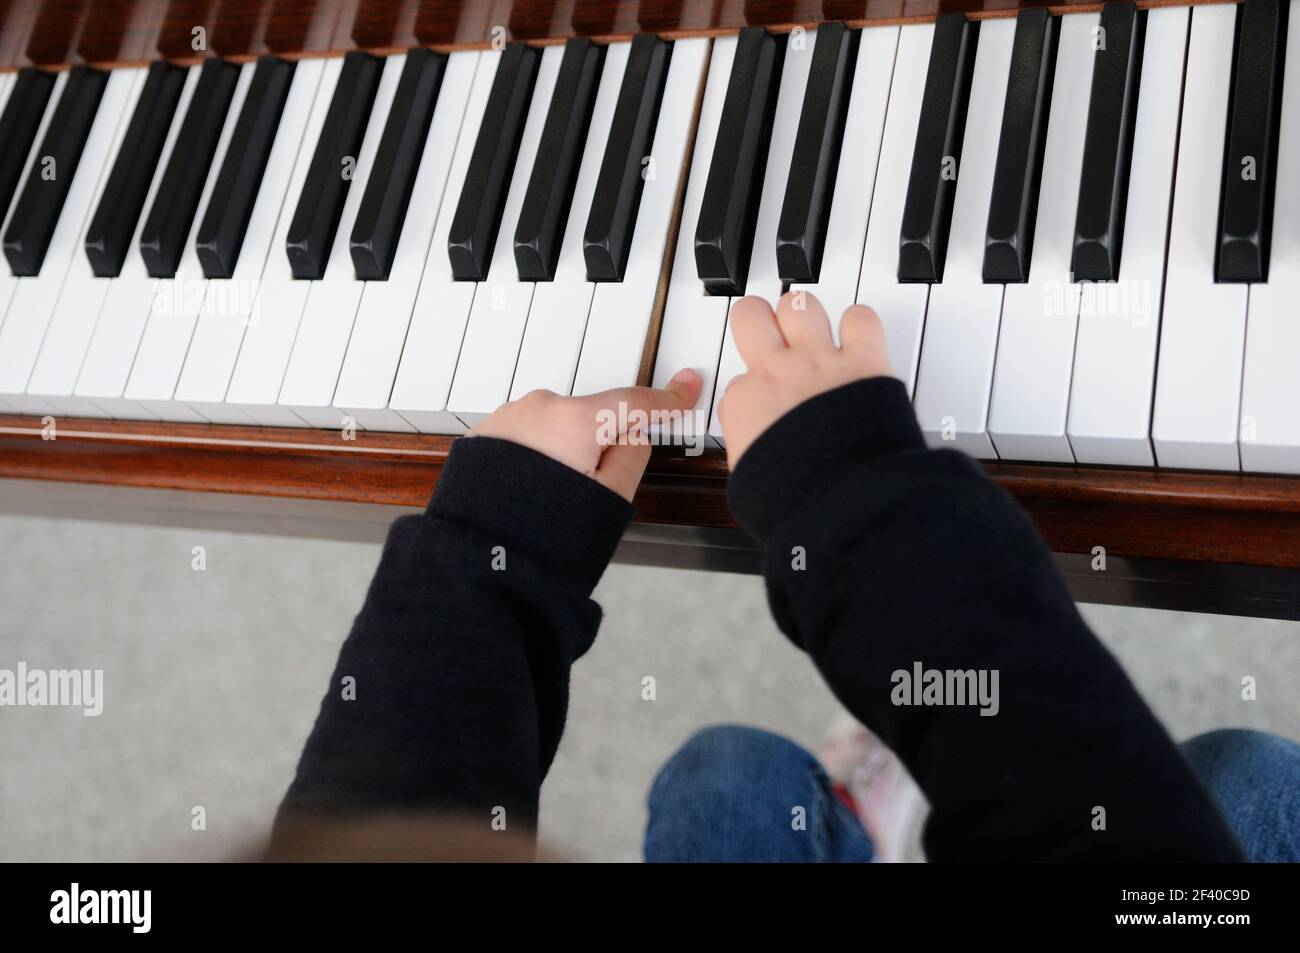 Adorable kleine Mädchen Spaß haben Klavier spielen Stockfoto